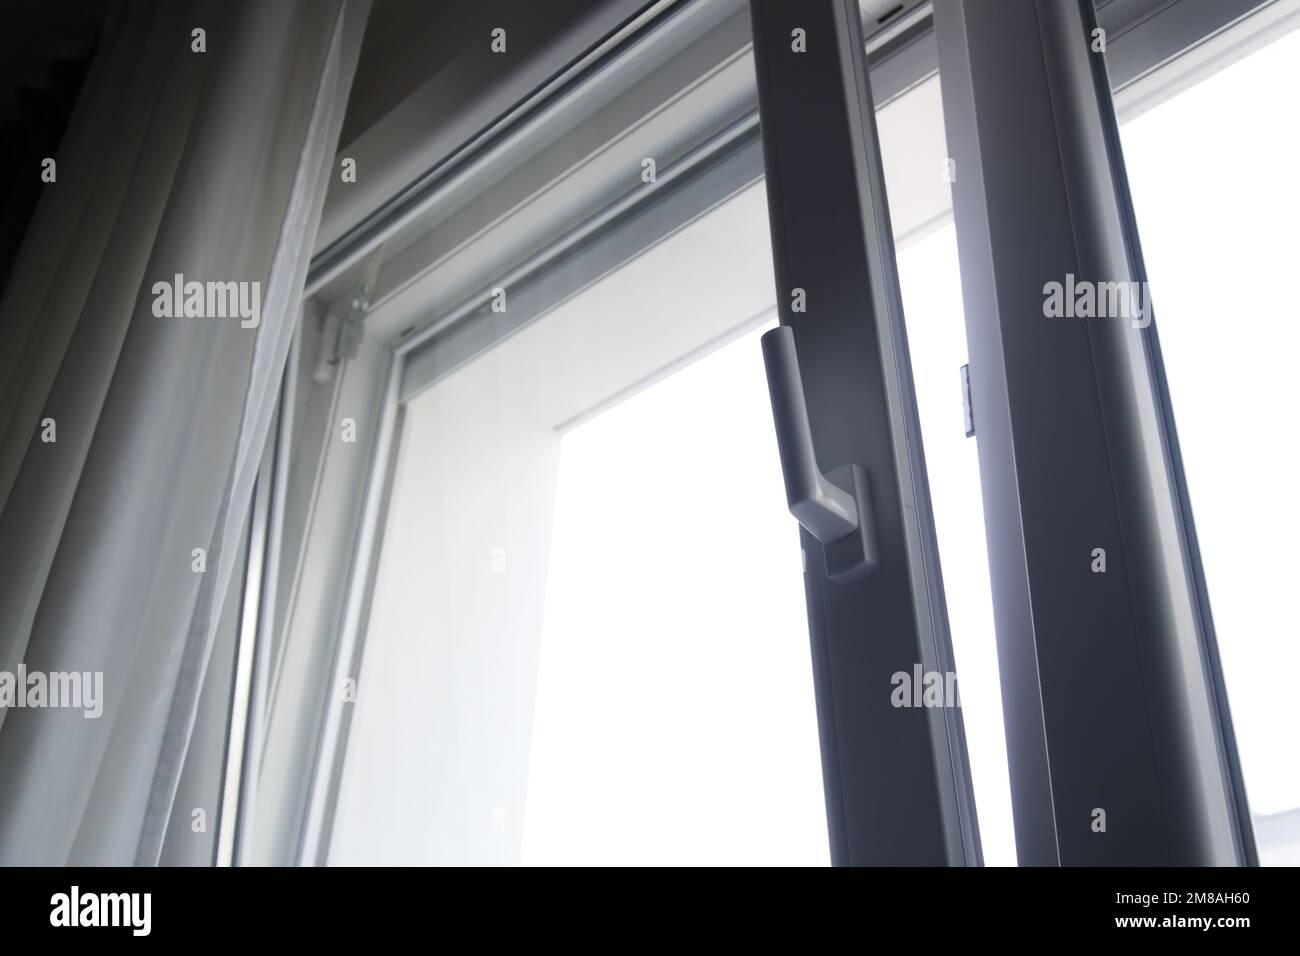 Fermeture de fenêtre en PVC et métal, fenêtre de porte en aluminium, cadre  gris argenté Photo Stock - Alamy